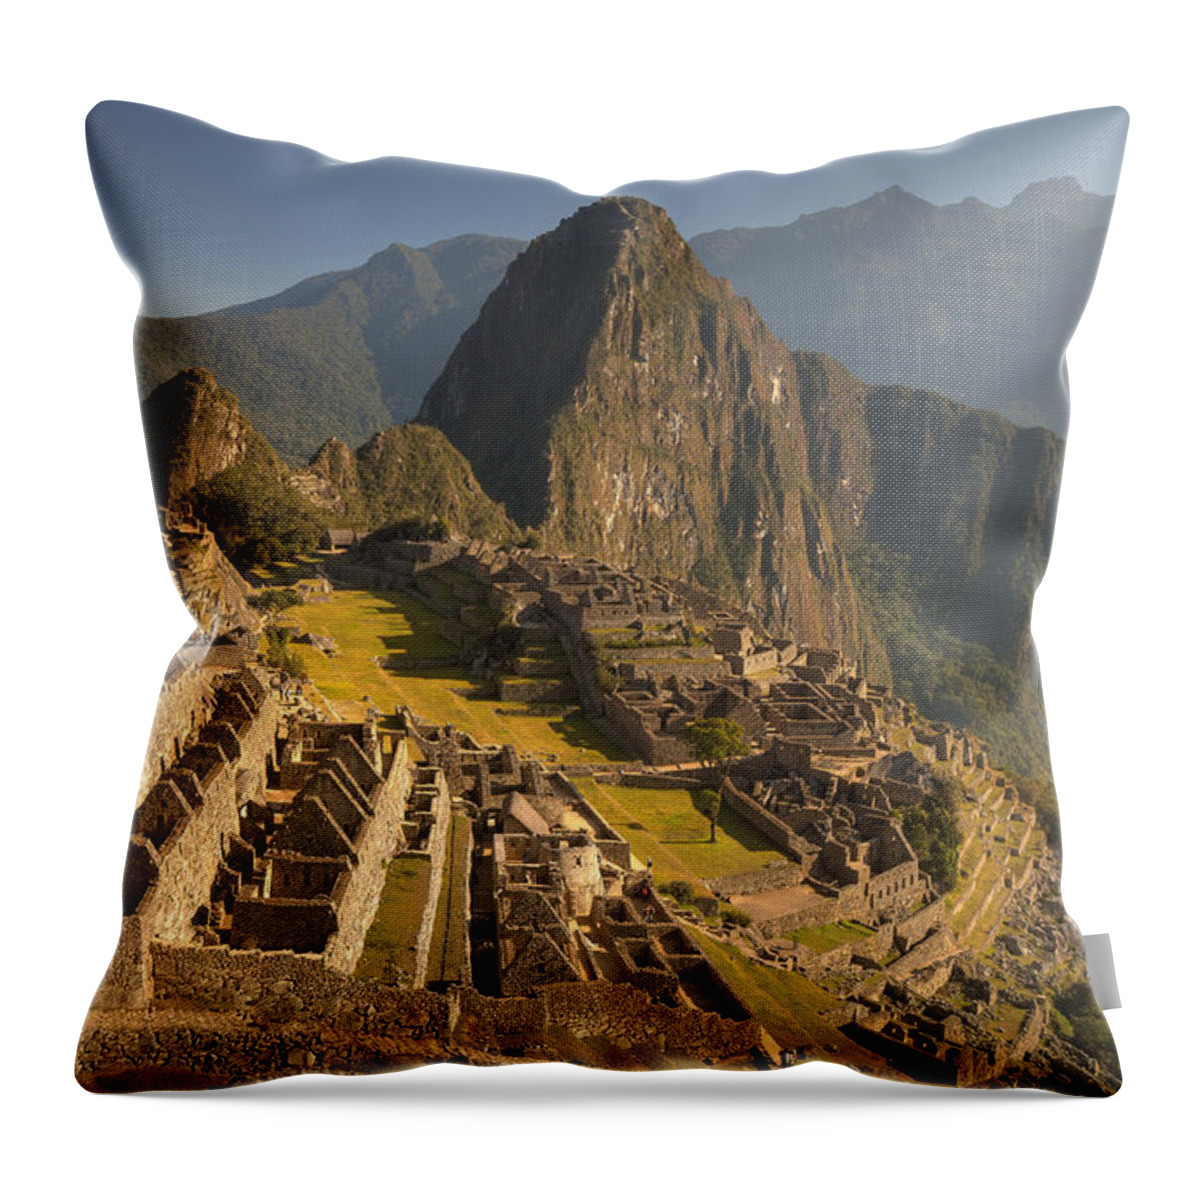 00498223 Throw Pillow featuring the photograph Machu Picchu At Dawn Near Cuzco Peru by Colin Monteath